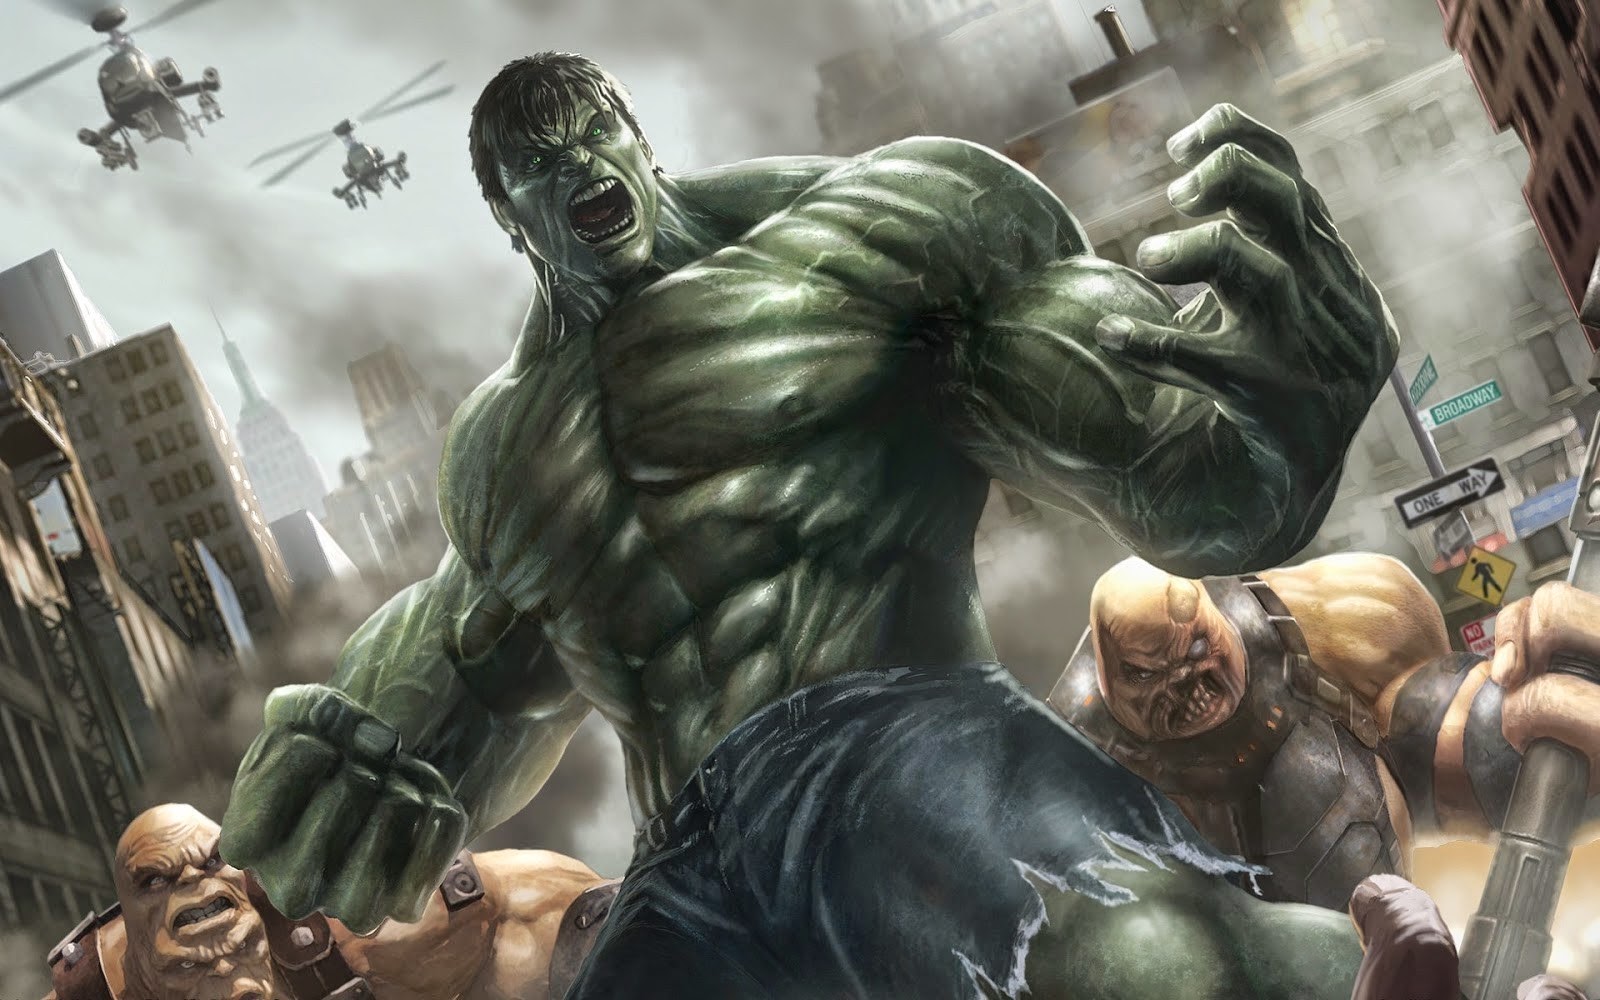 Gambar Kumpulan Gambar Kartun Terbaru 2016 Hulk Berikan Mudah